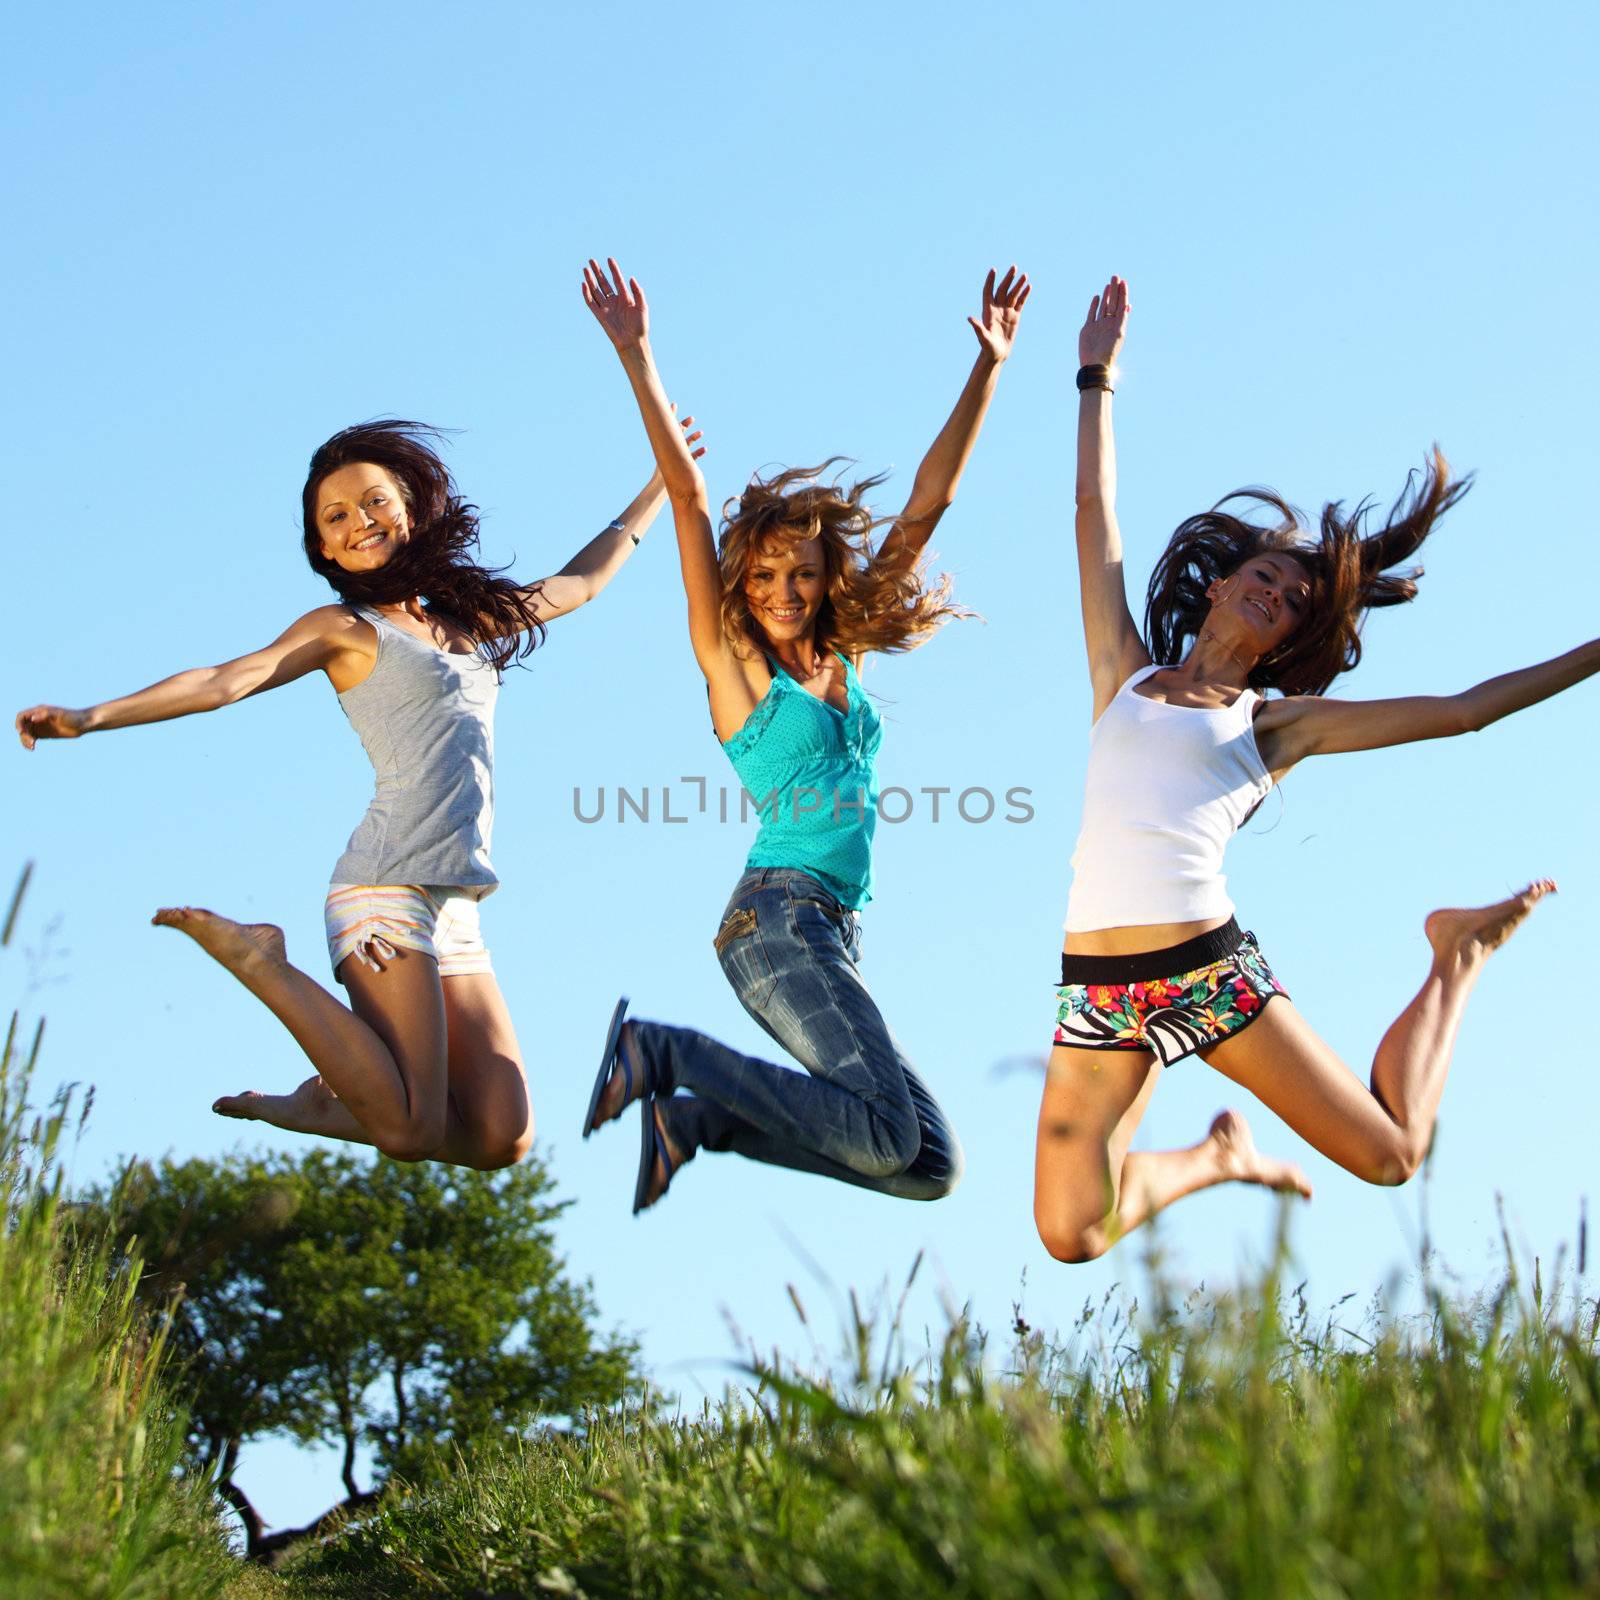 girlfriends jump in green grass field